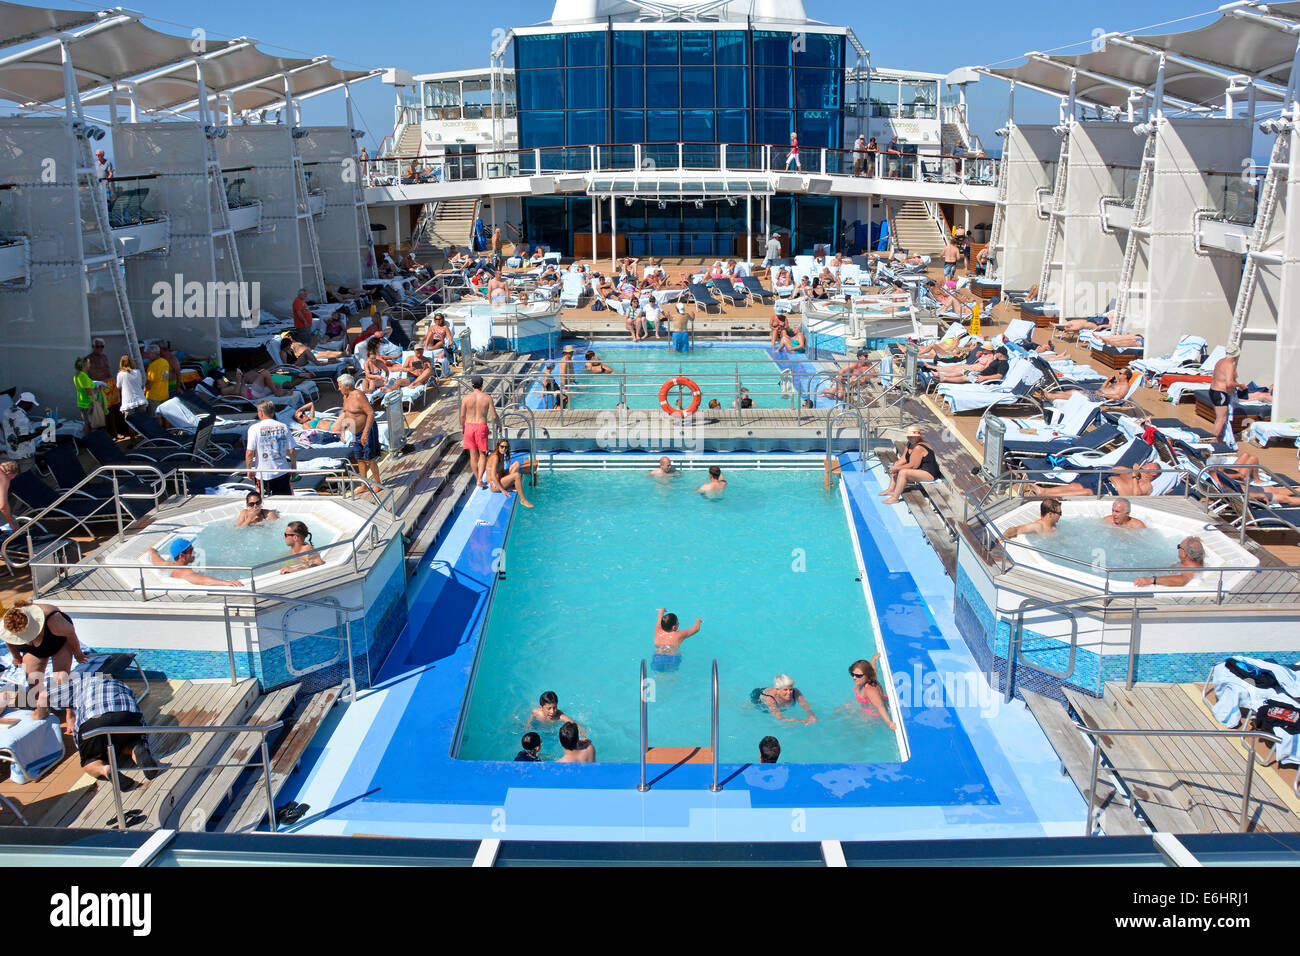 A bord de ruise navire paquebot piscines jacuzzi installations personnes se détendant sur les populaires bondés de soleil chaise longue terrasse croisière méditerranéenne Banque D'Images